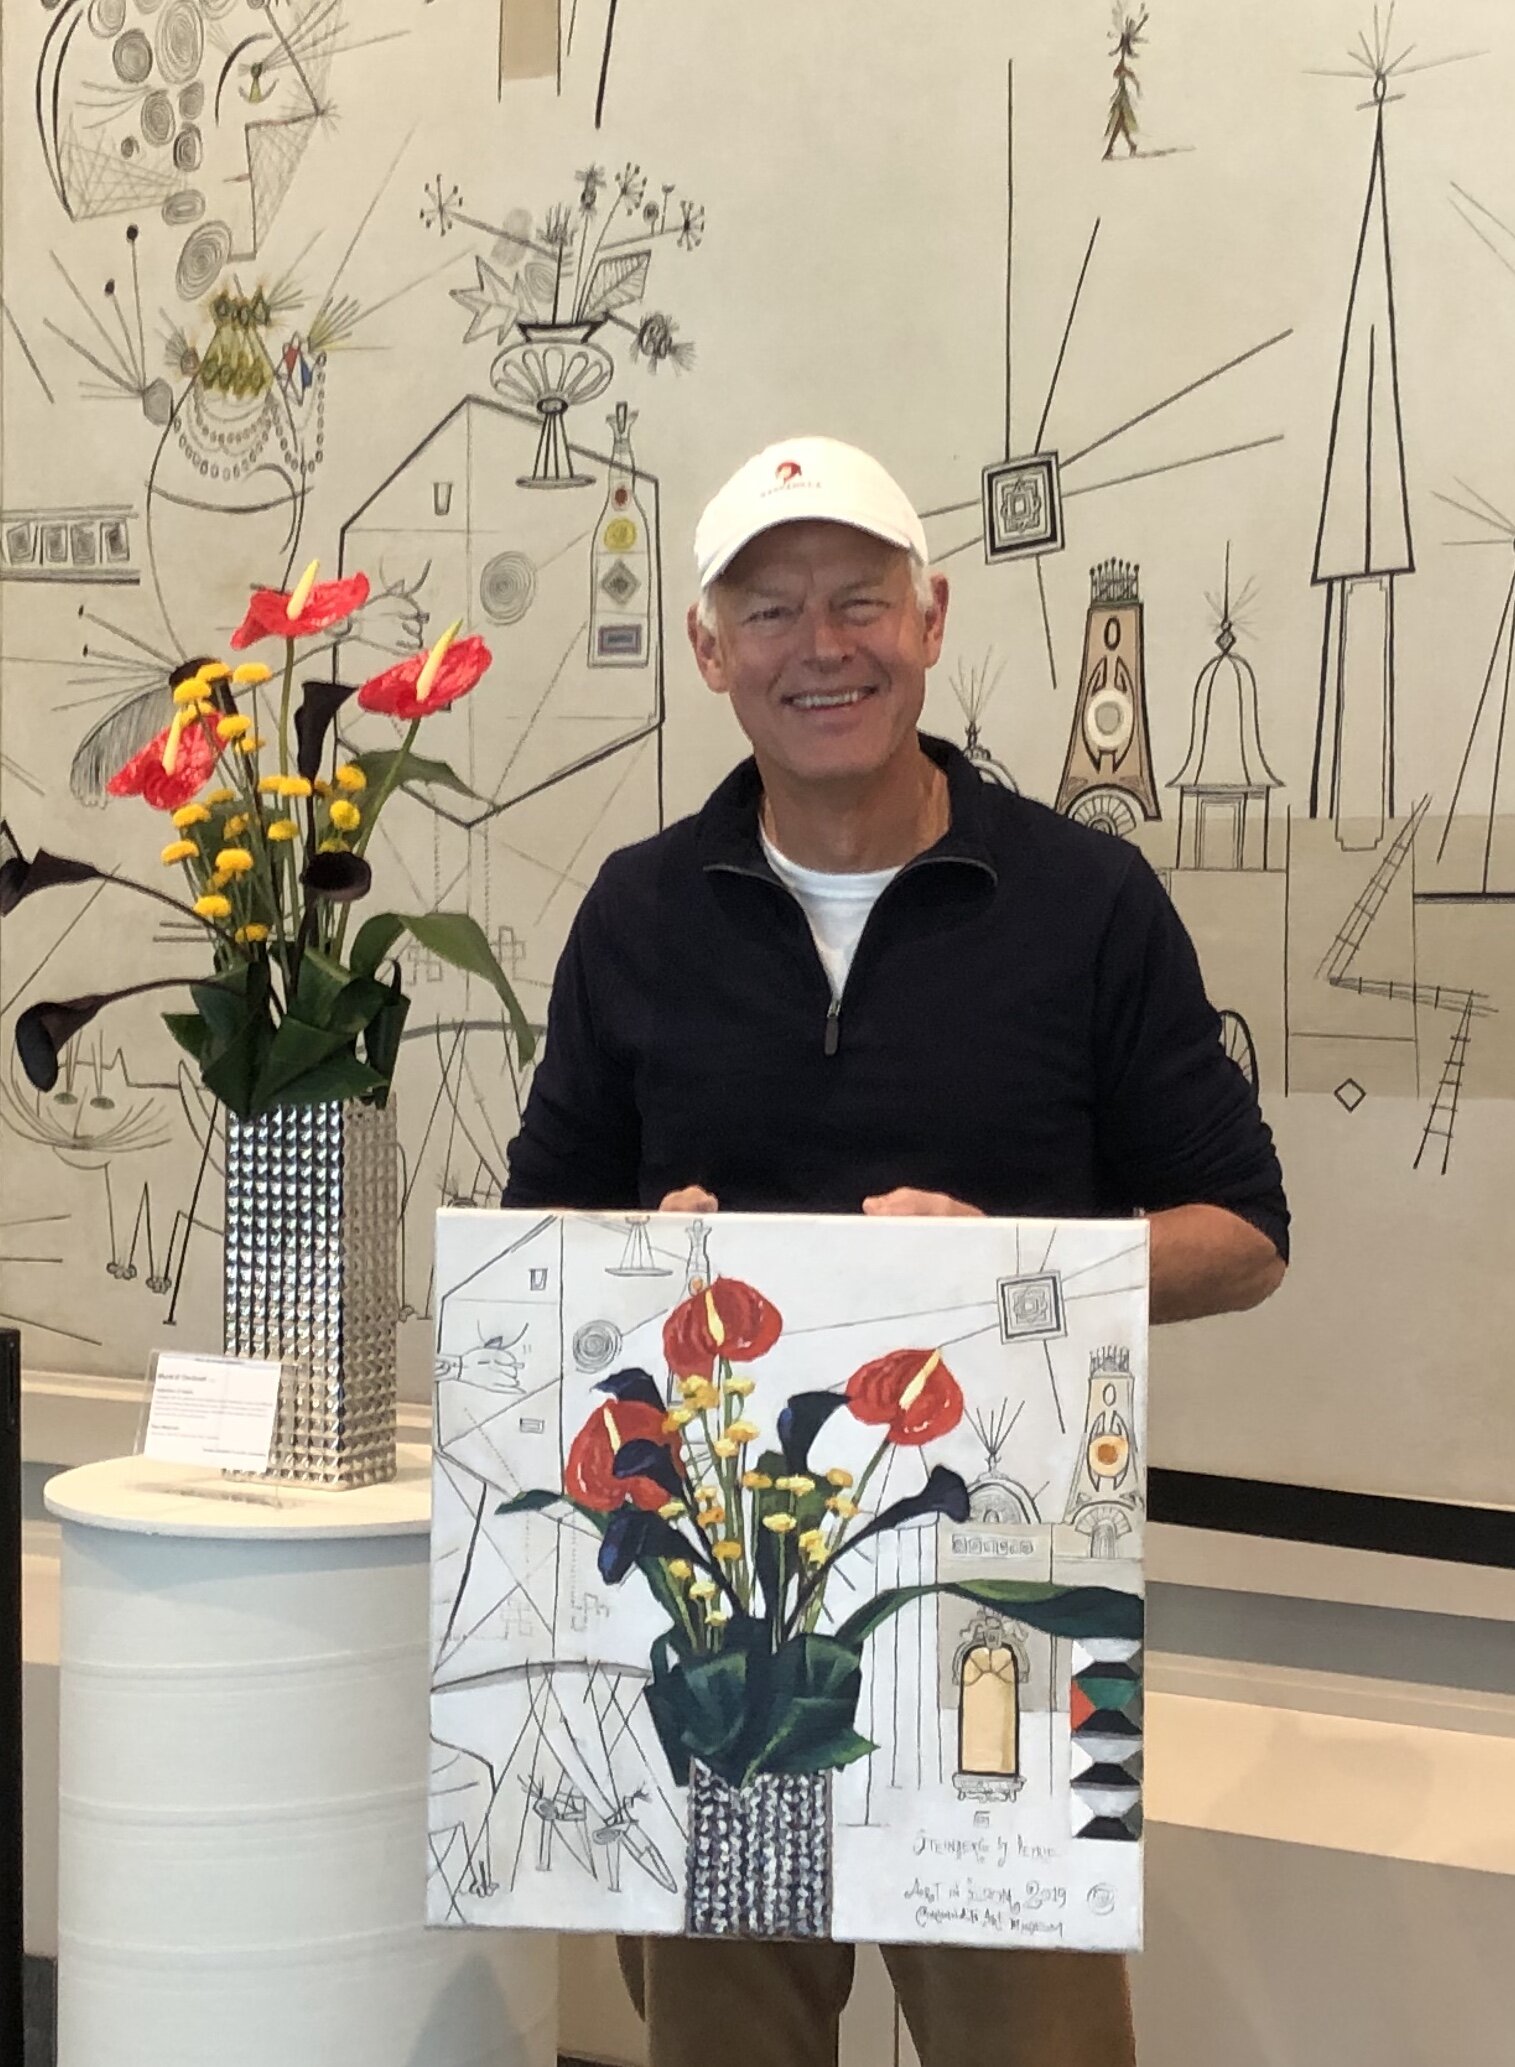  Guest Artist at Cincinnati Art Museum 2019 Art in Bloom, with View of Cincinnati Mural by Saul Steinberg 